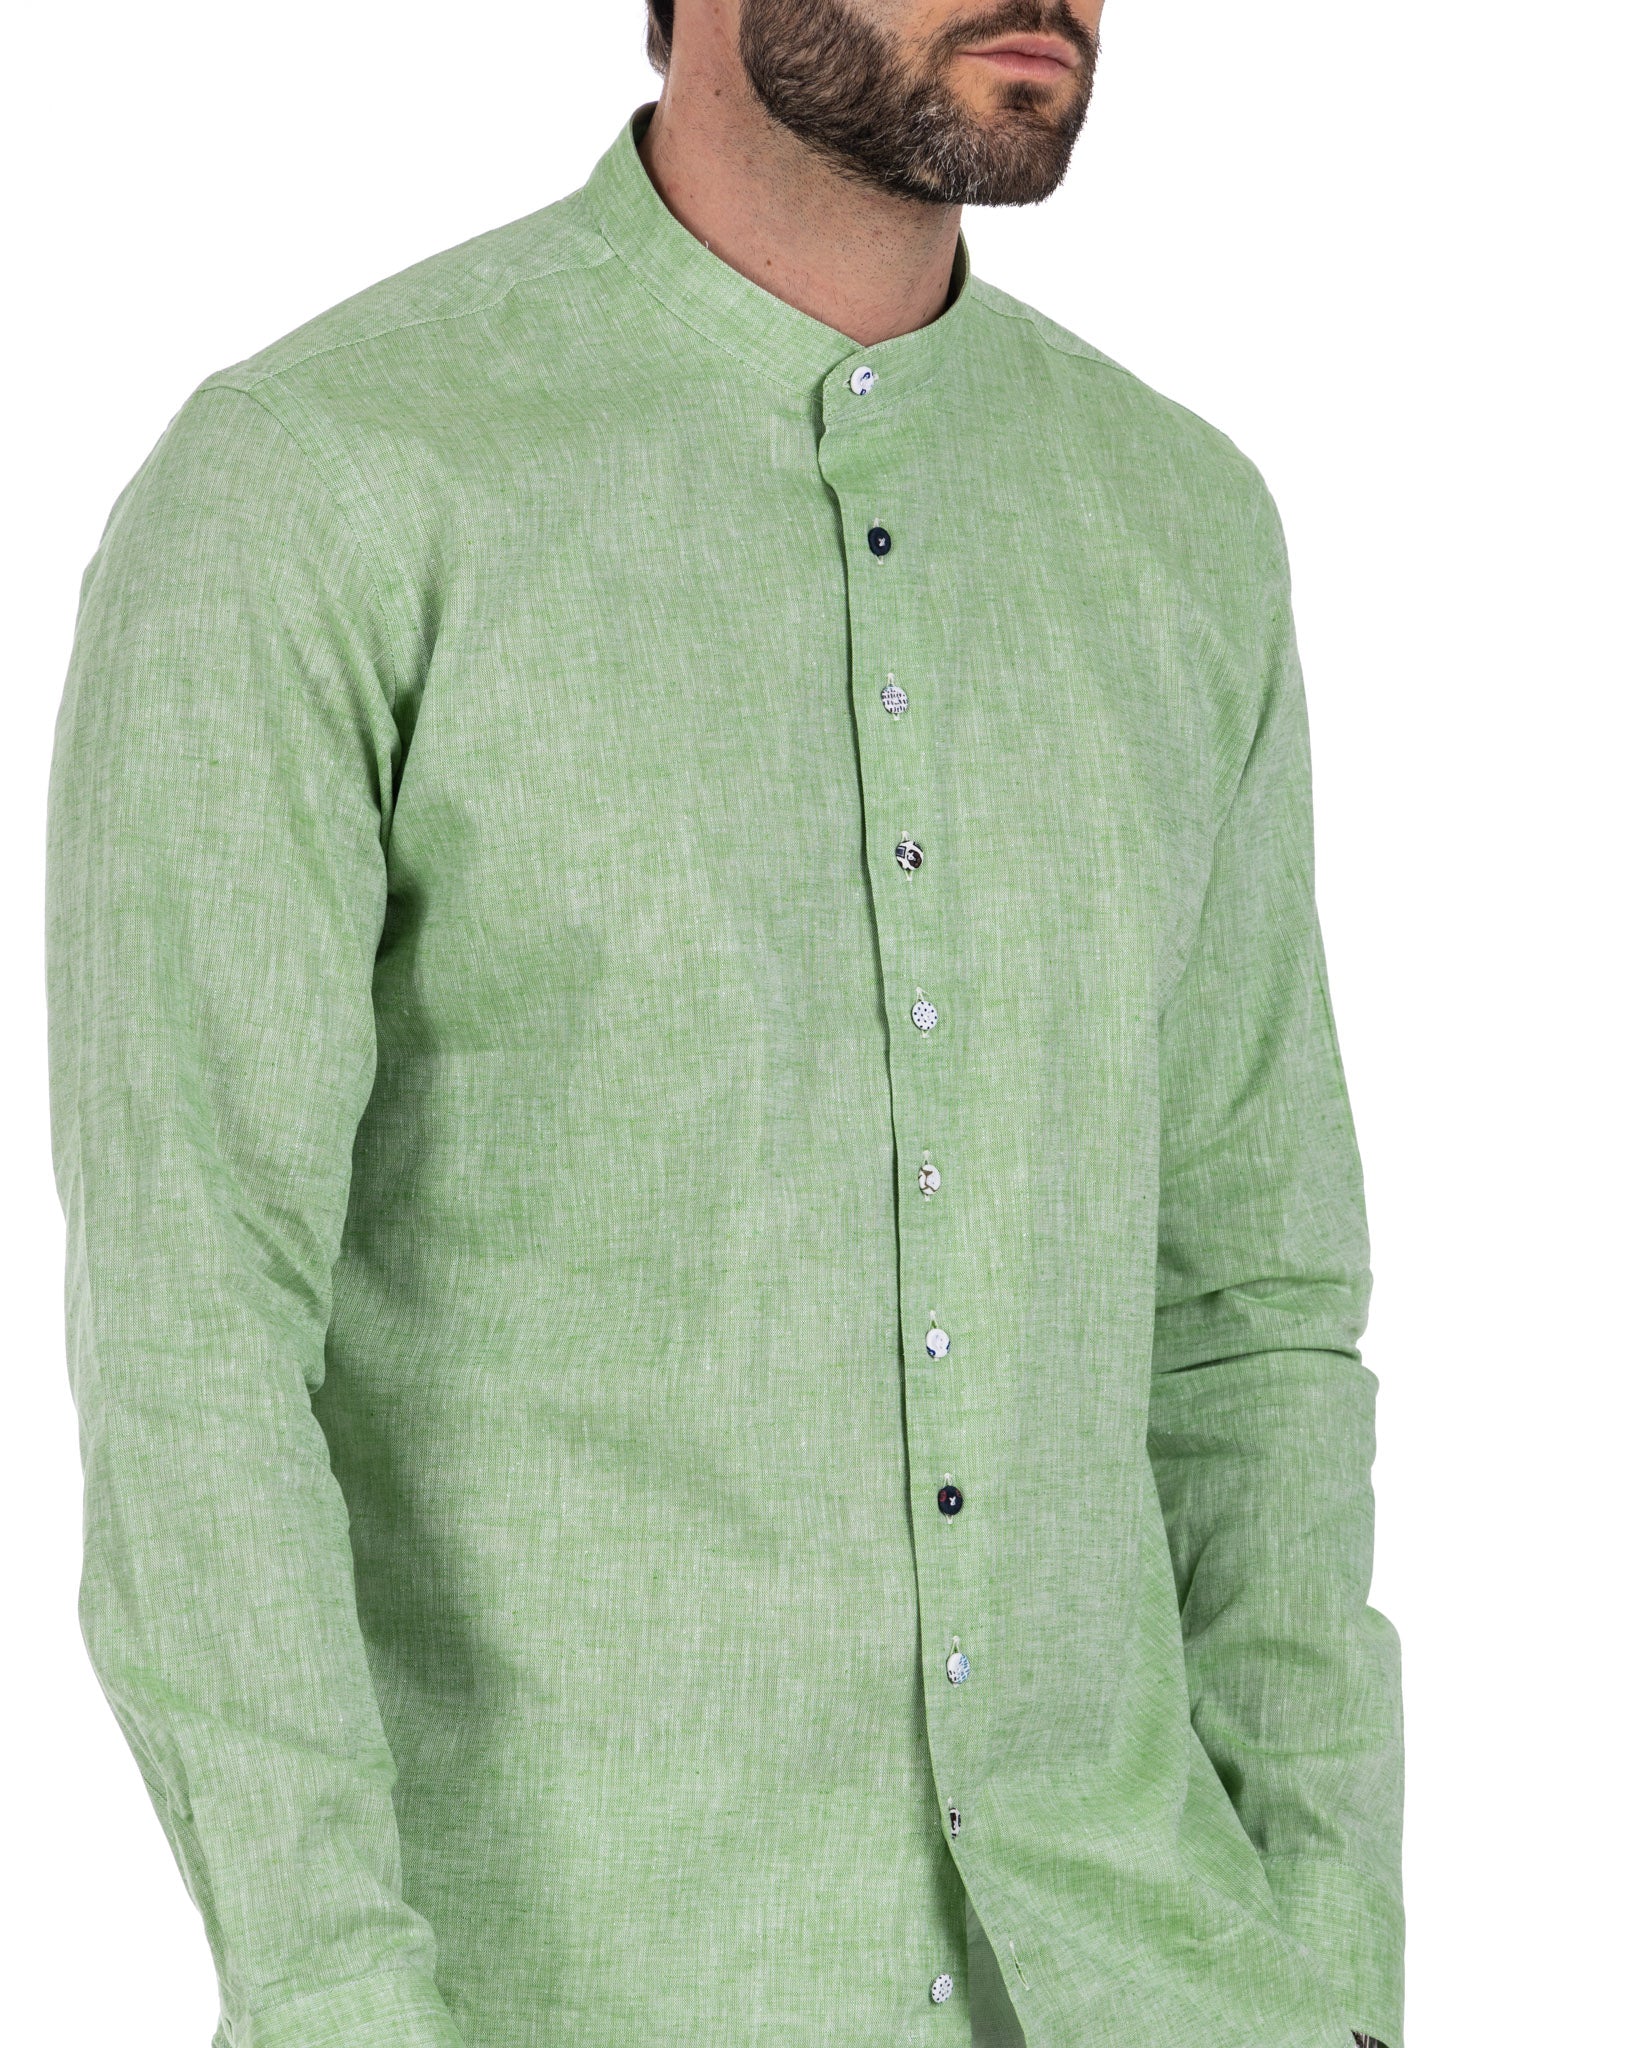 Positano - green linen Korean shirt